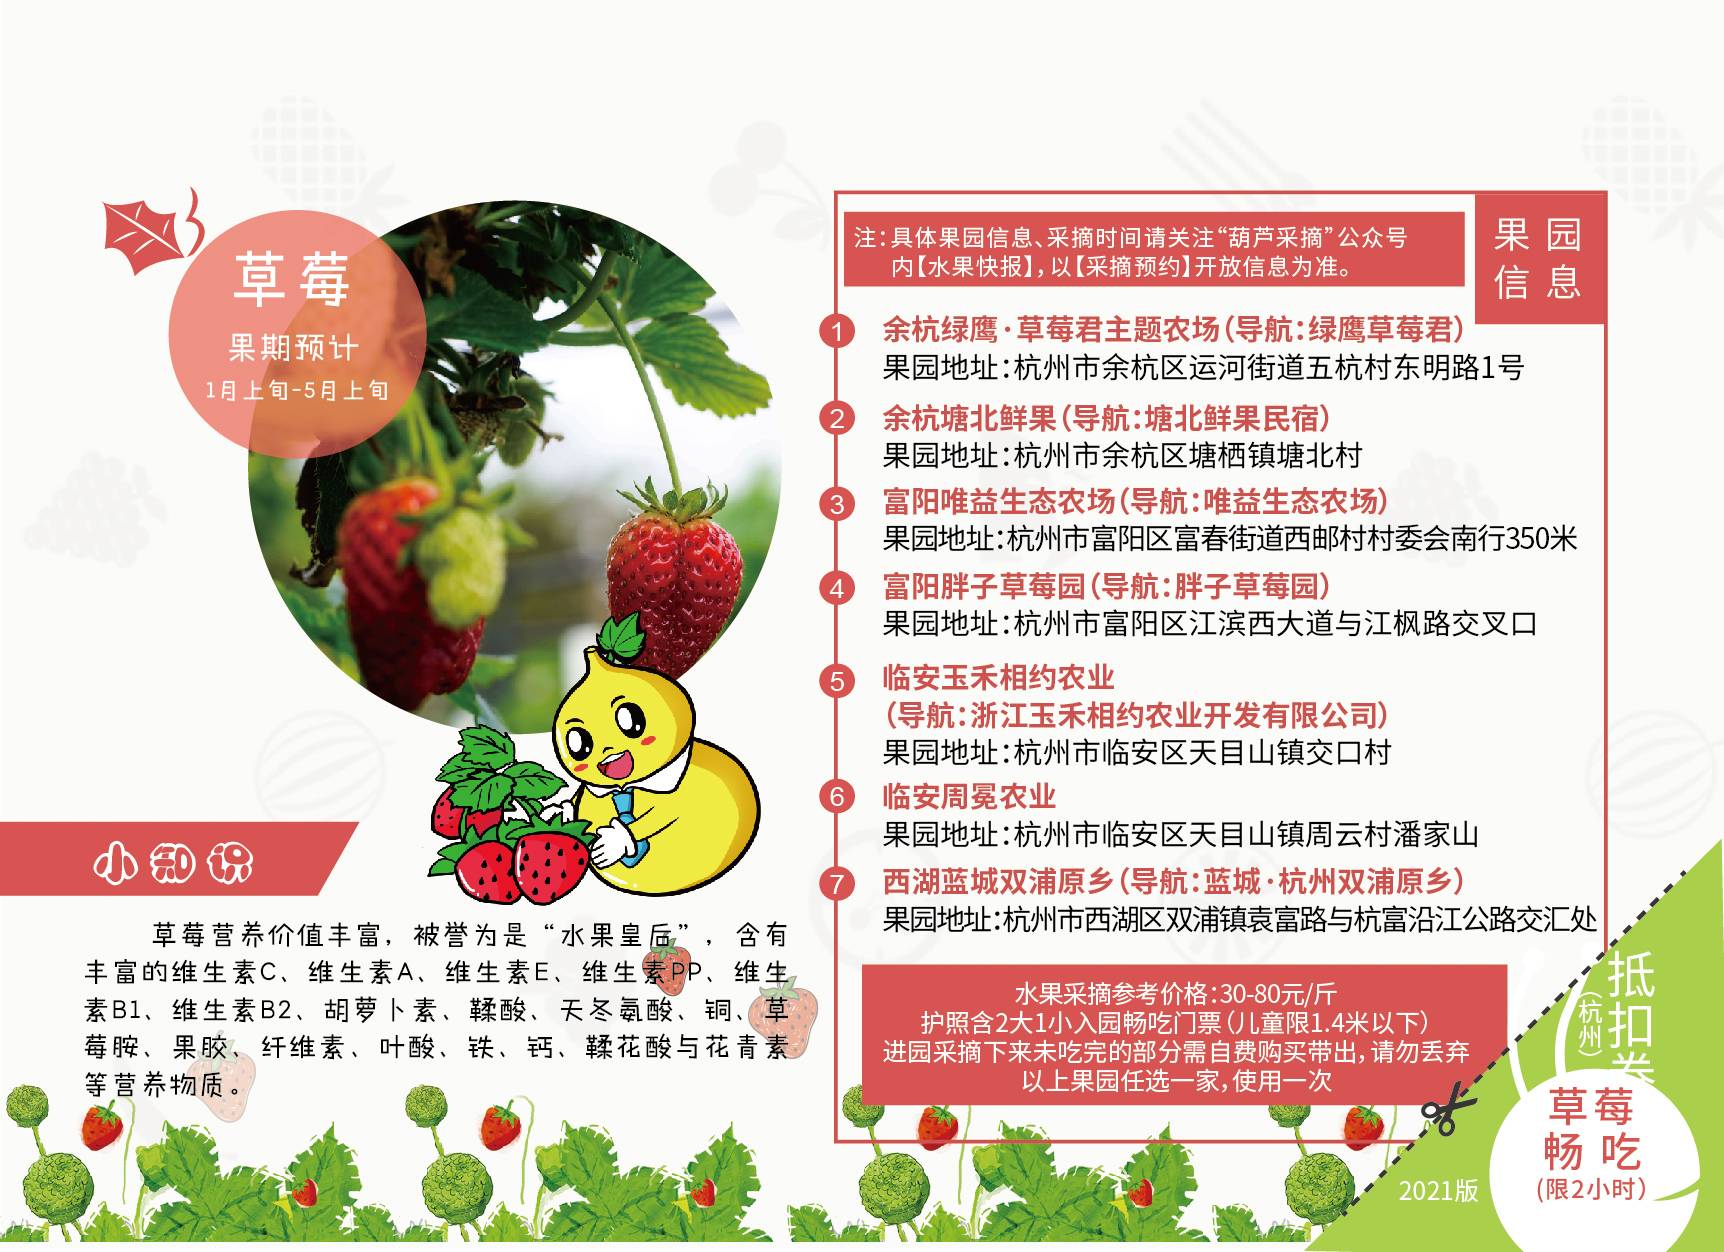 【杭州】【修改版】全新上线！199元抢总价值1800元的2021杭州经典版水果采摘亲子护照！